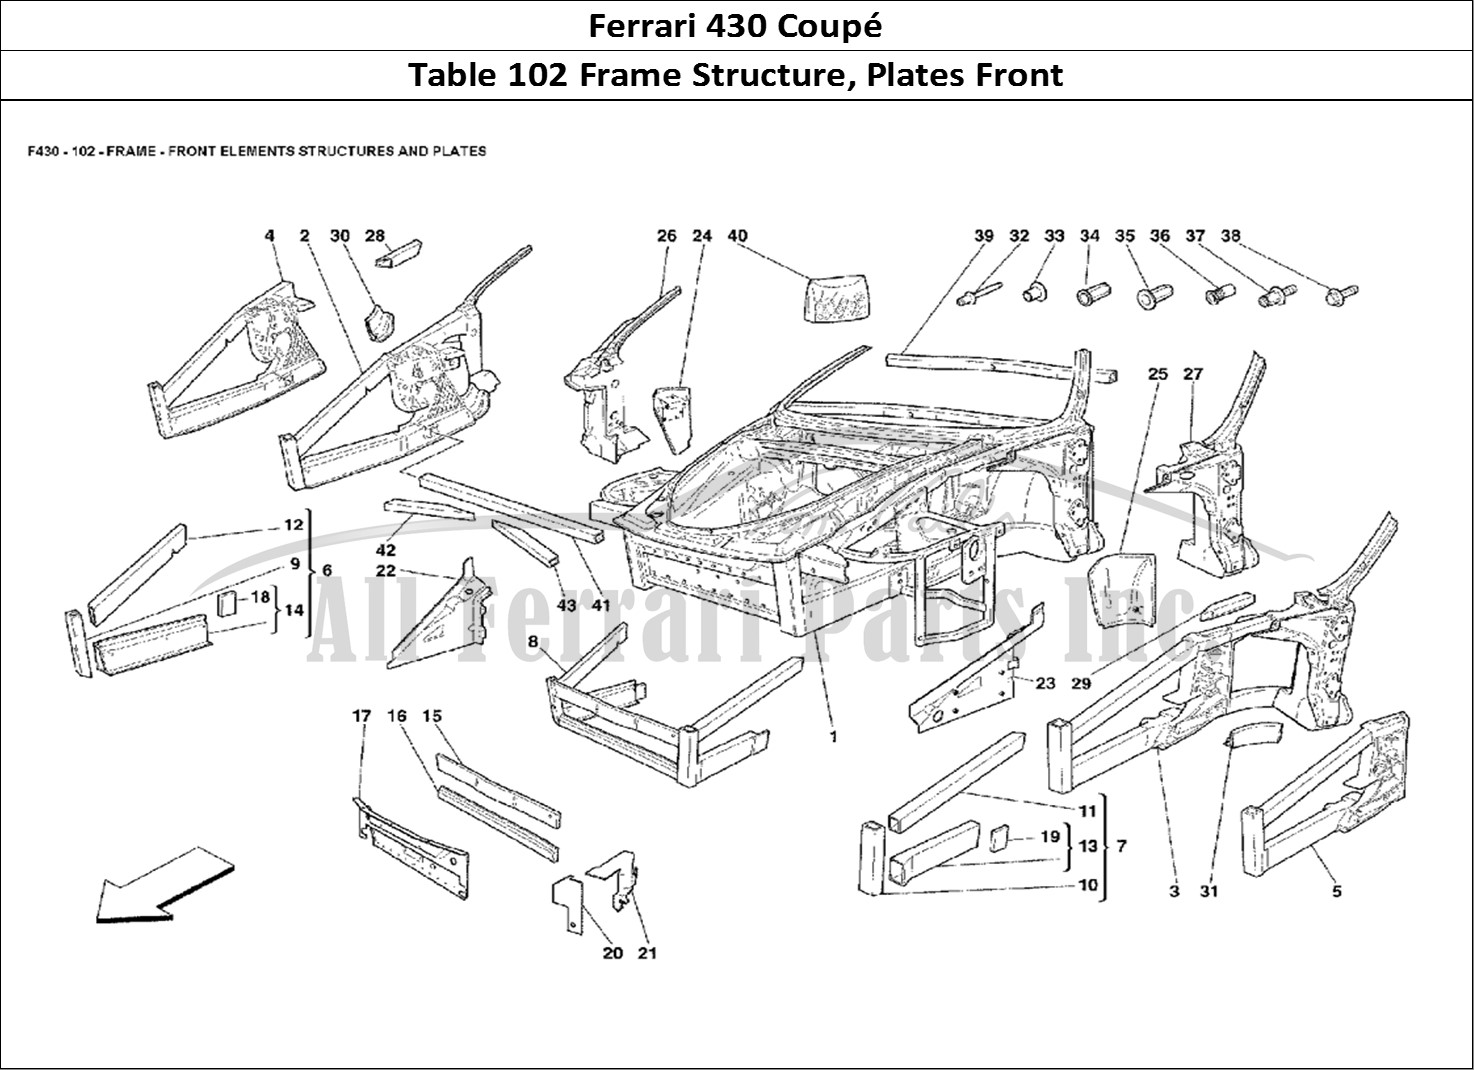 Ferrari Parts Ferrari 430 Coup Page 102 Frame - Front Elements St